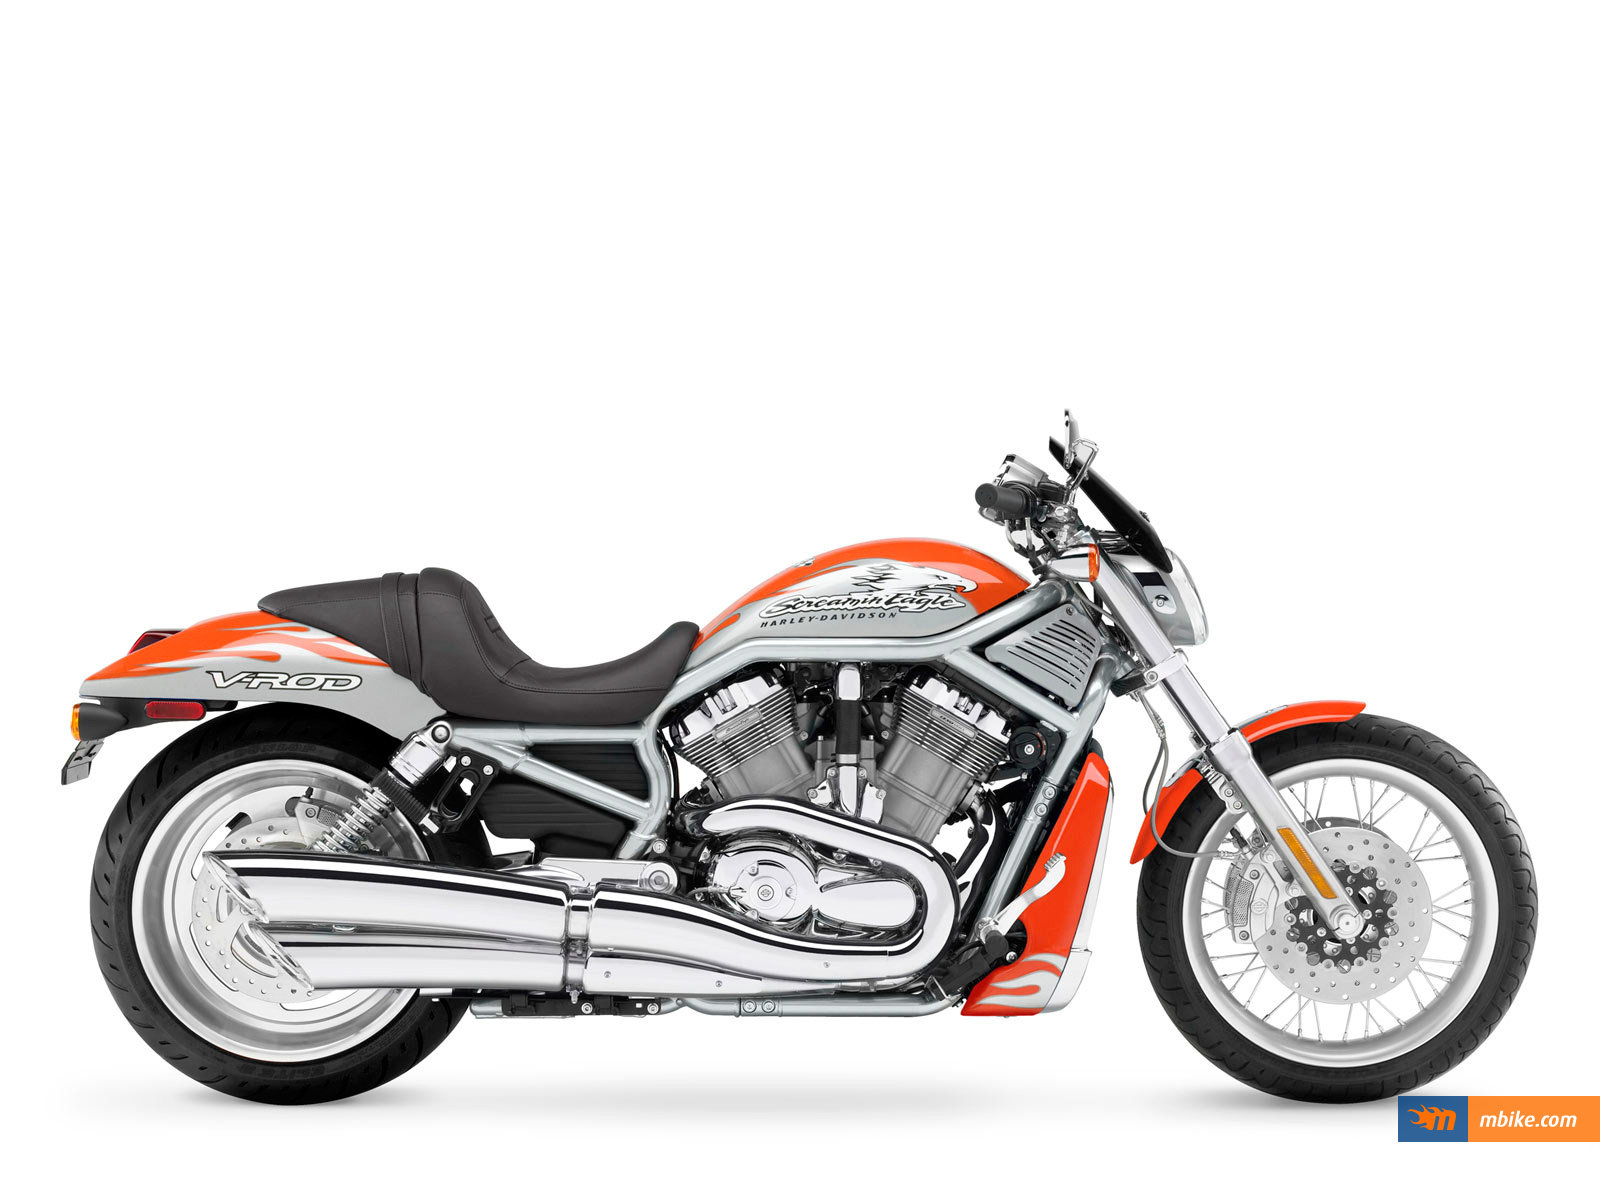 2007 Harley-Davidson VRSCX Screamin